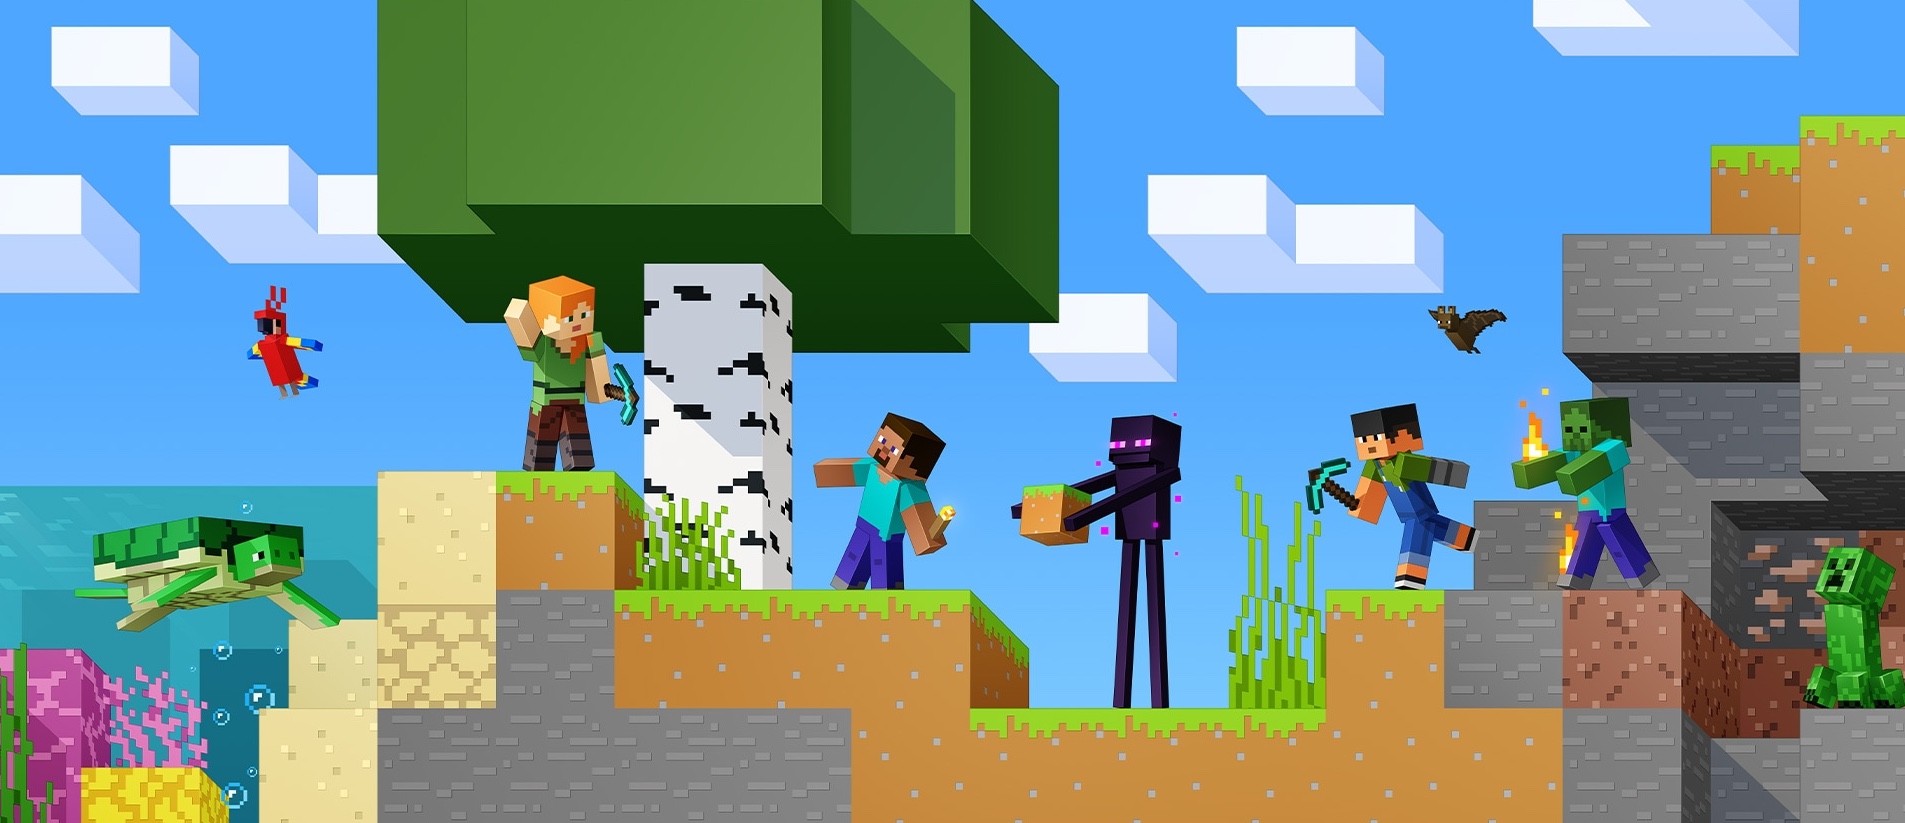 « Minecraft » arrive officiellement sur les écrans de télévision du monde entier, 15 ans après sa création.  Plus tôt dans la journée, Mojang Studios a annoncé que Netflix développait une toute nouvelle série animée basée sur le jeu.